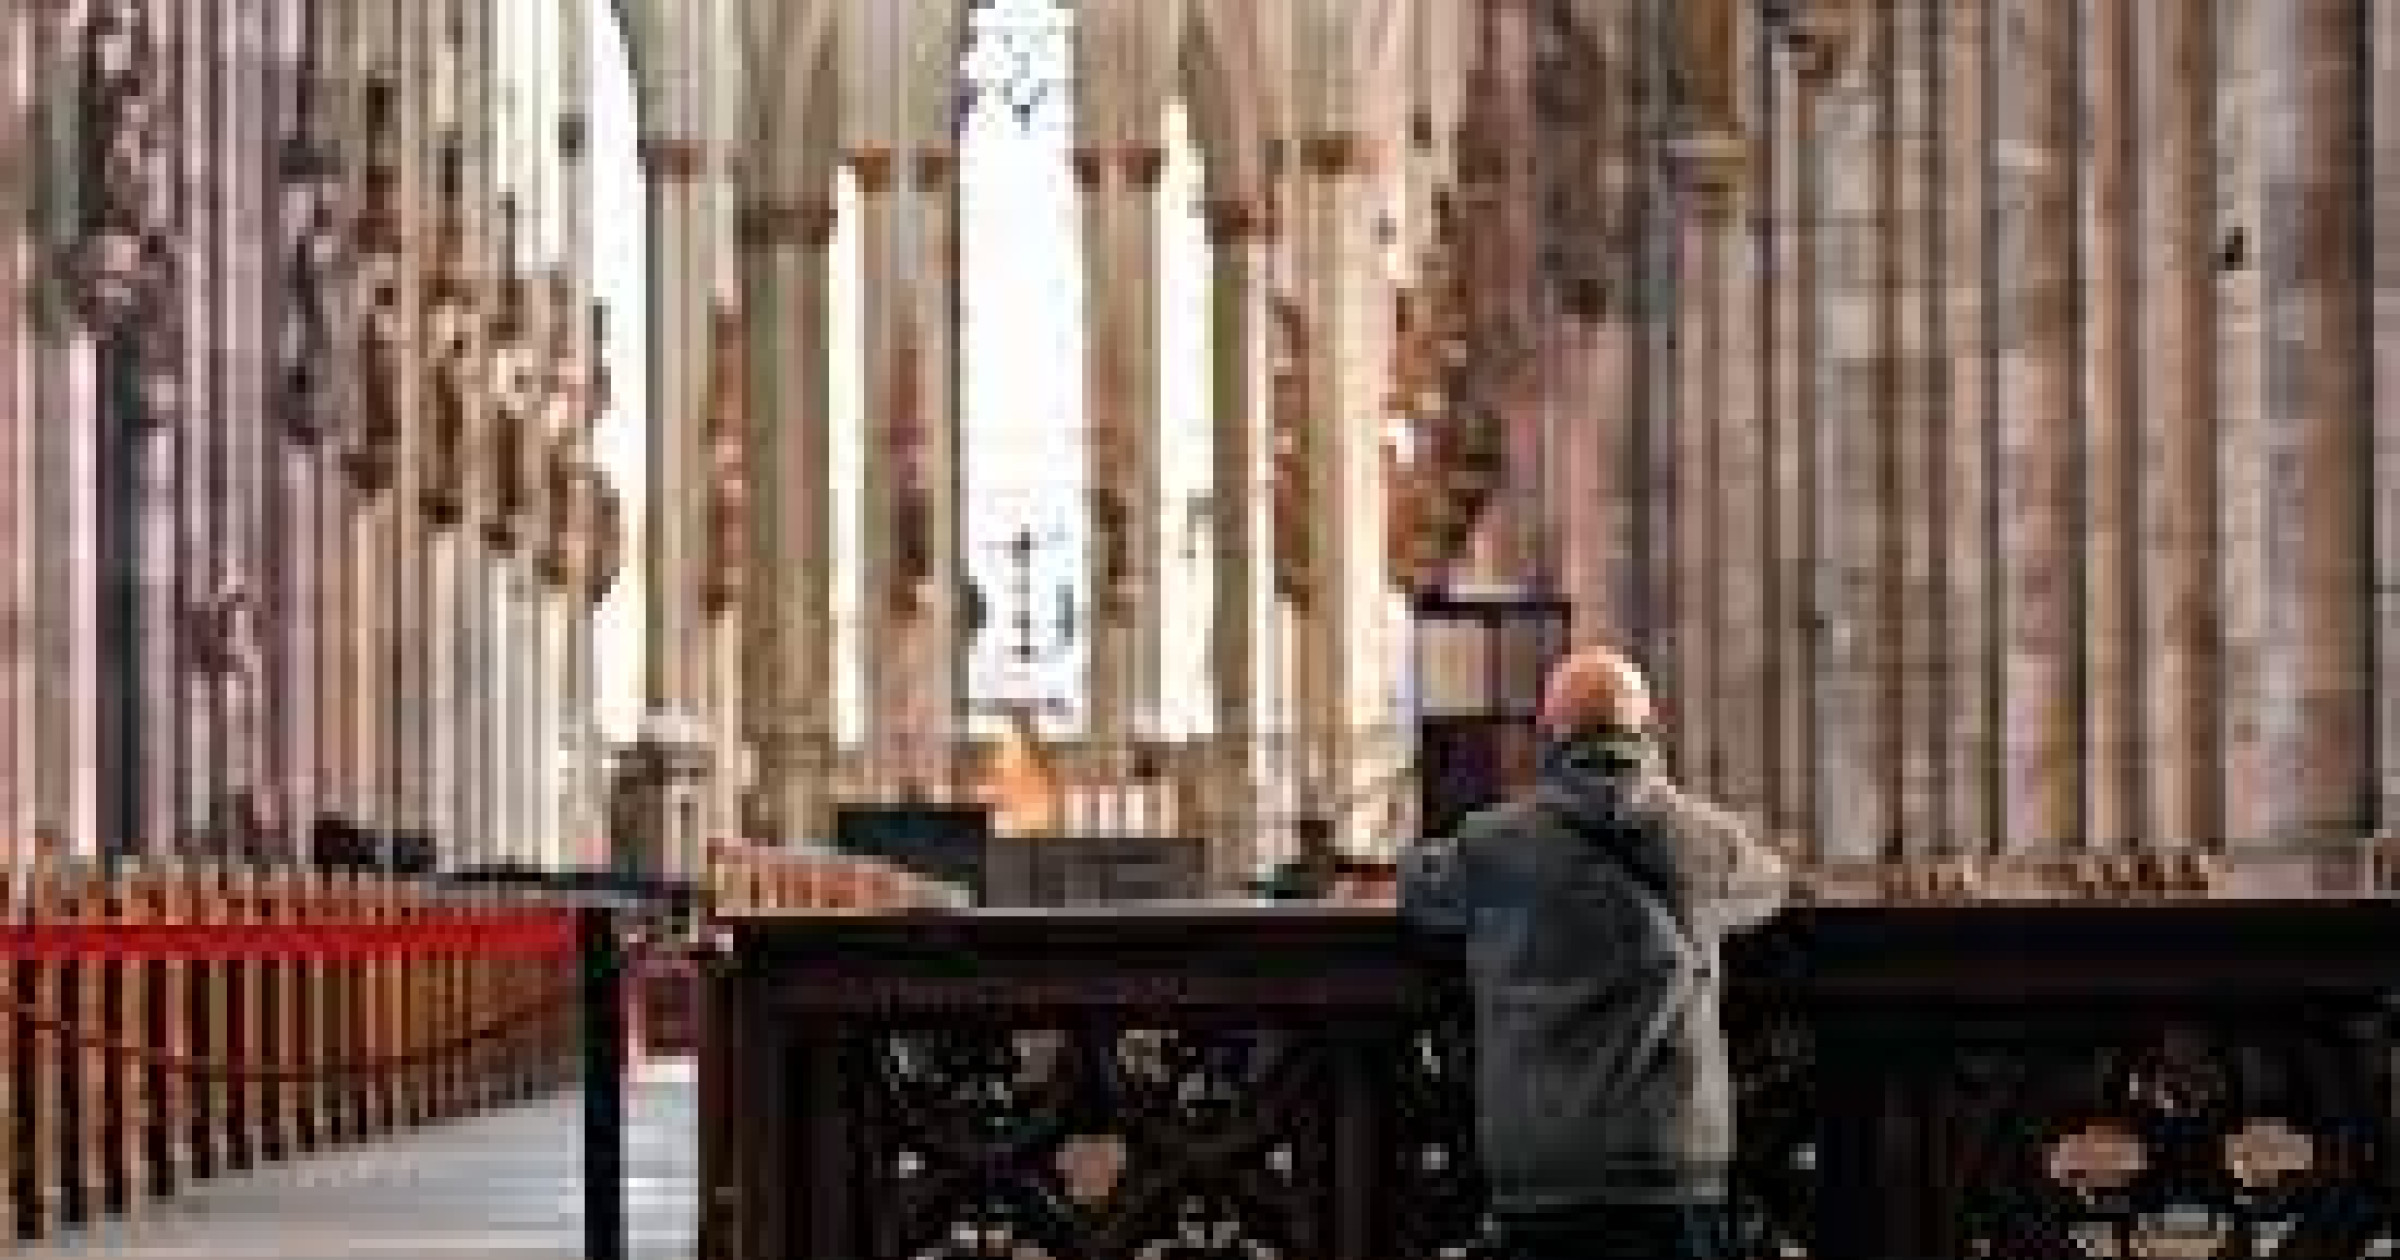 Die katholische Kirche in Deutschland bringt ihre Missbilligung gegenüber der extremen Rechten zum Ausdruck.